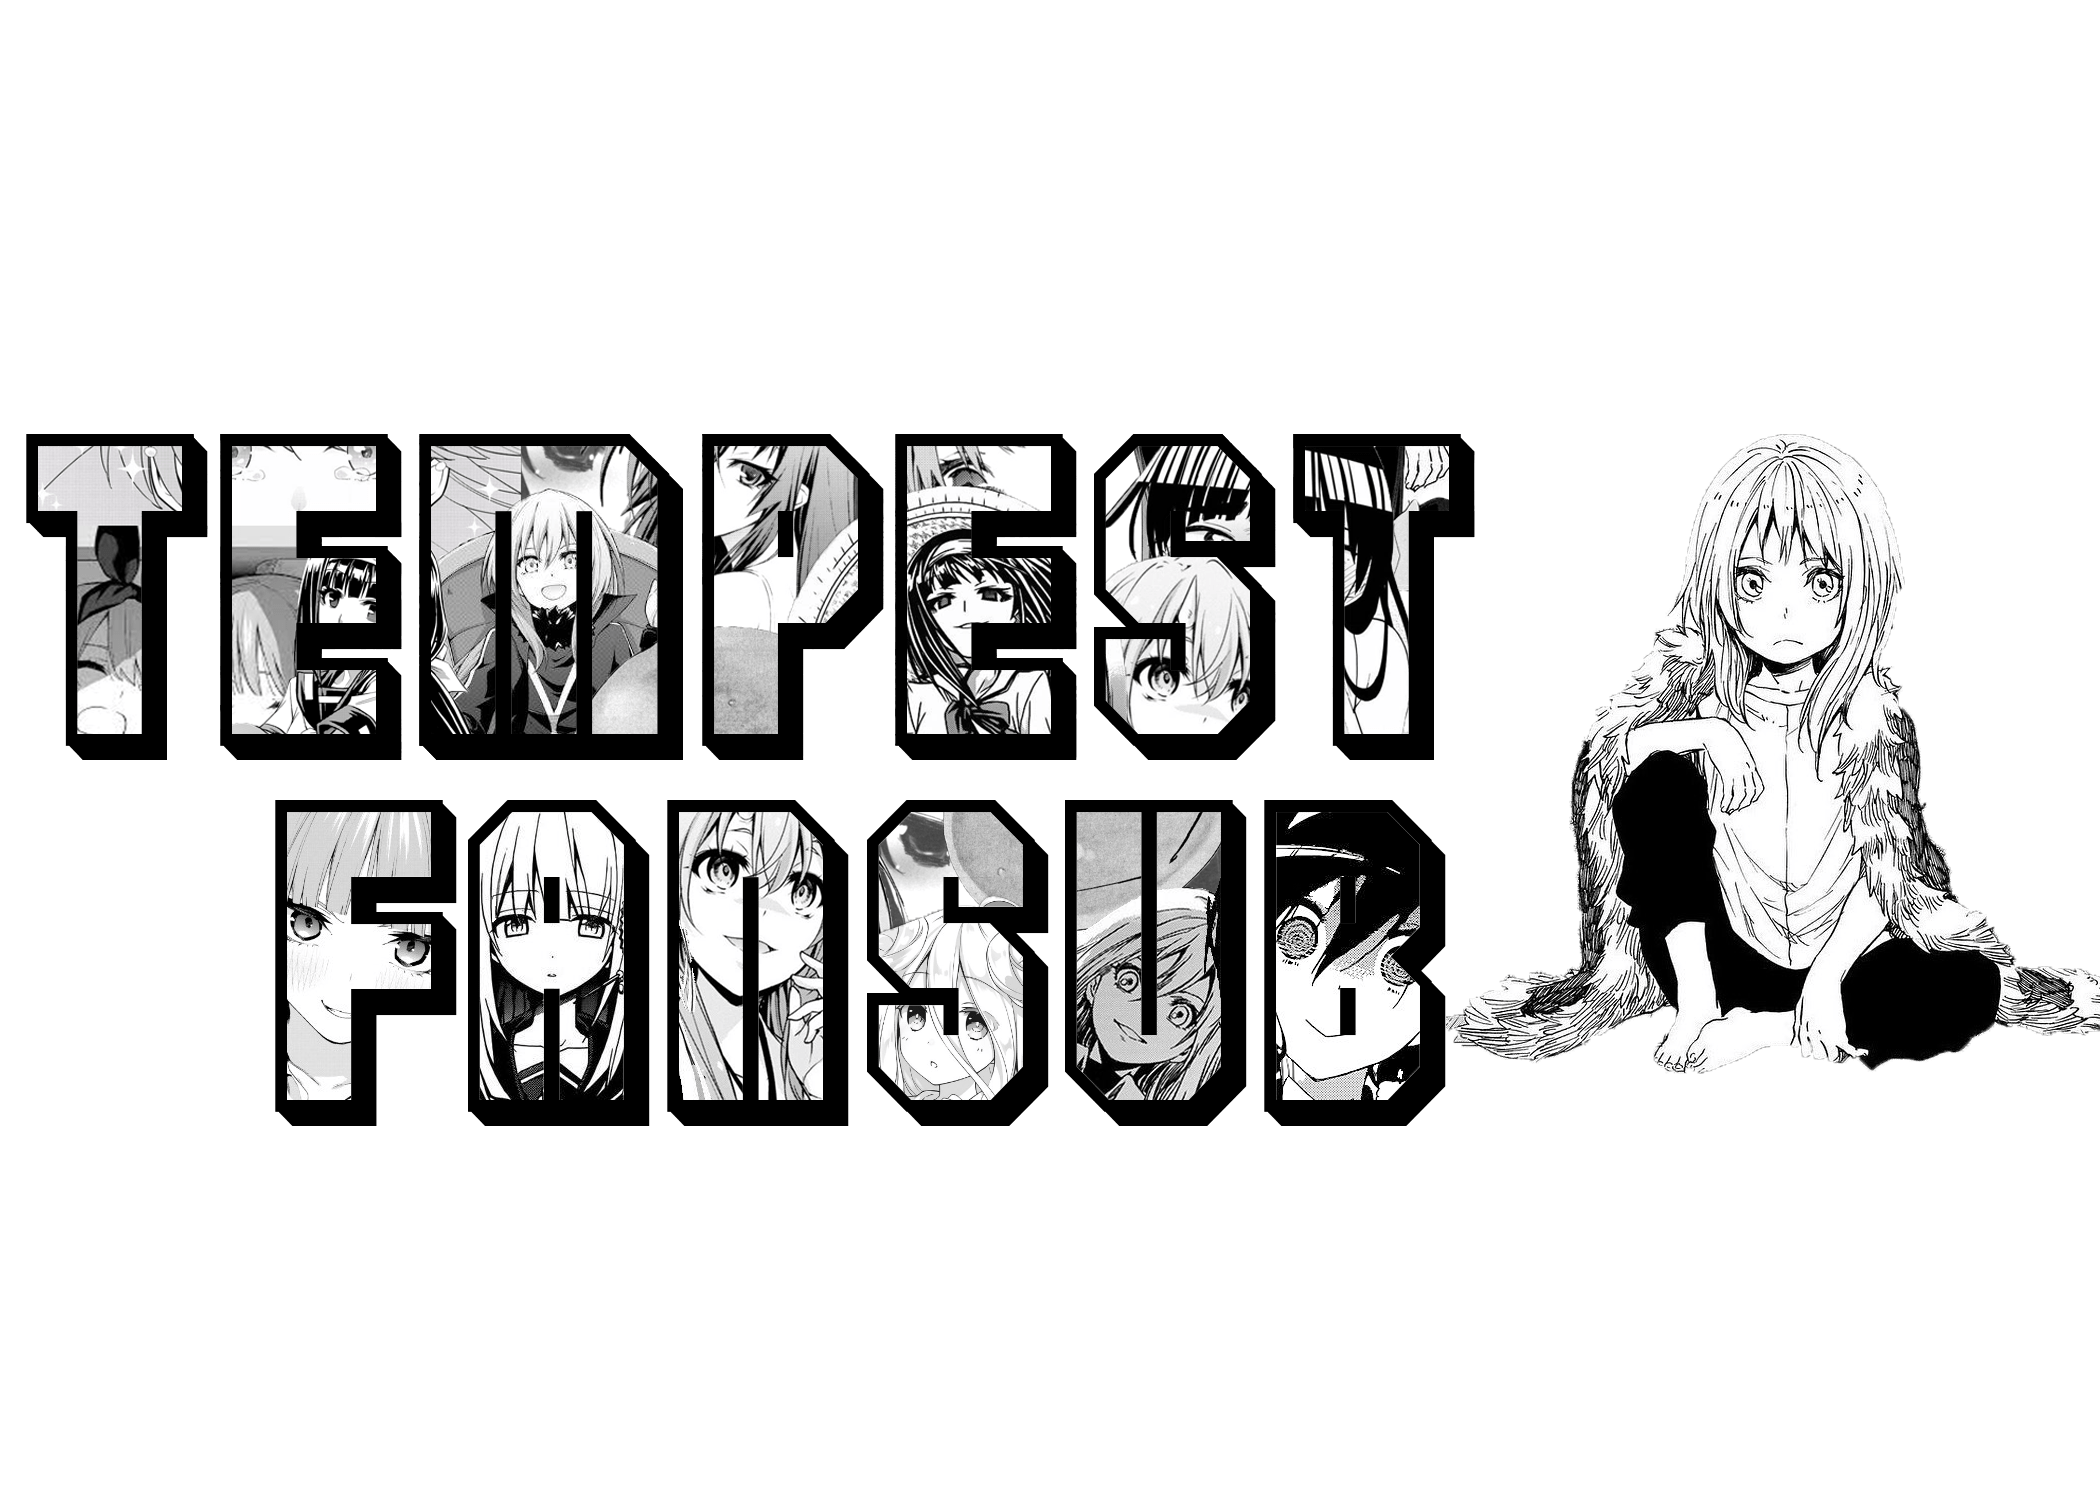 Tempest Fansub - Türkçe Anime İzlemenin Doğru Adresi Tempest Fansub. turkanime, tranimeizle